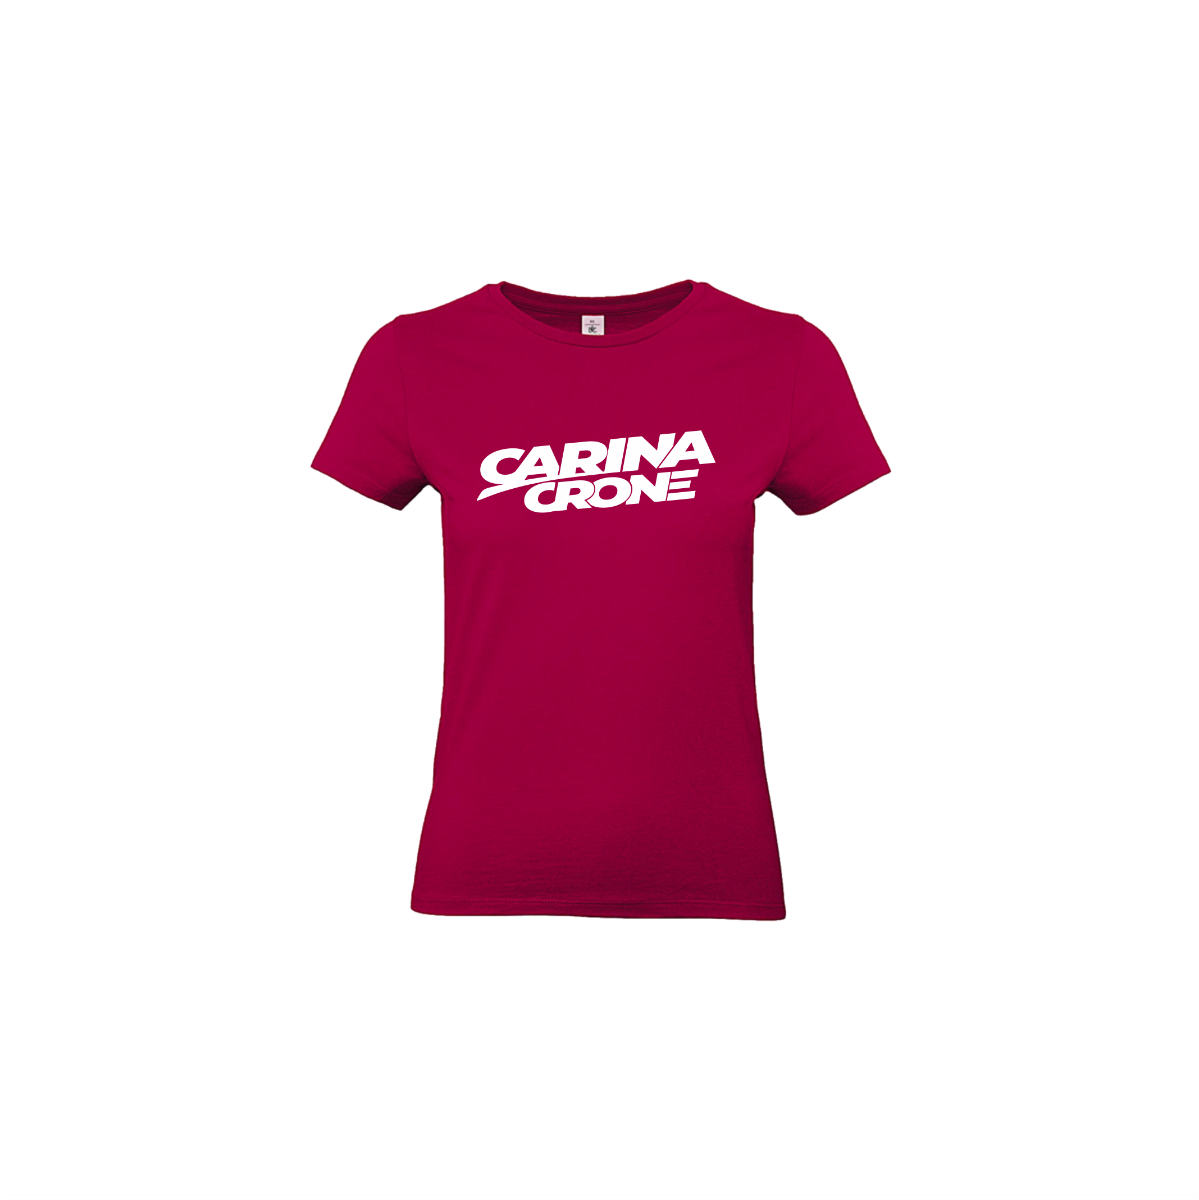 Girly-Shirt "CARINA CRONE Logo" sorbet